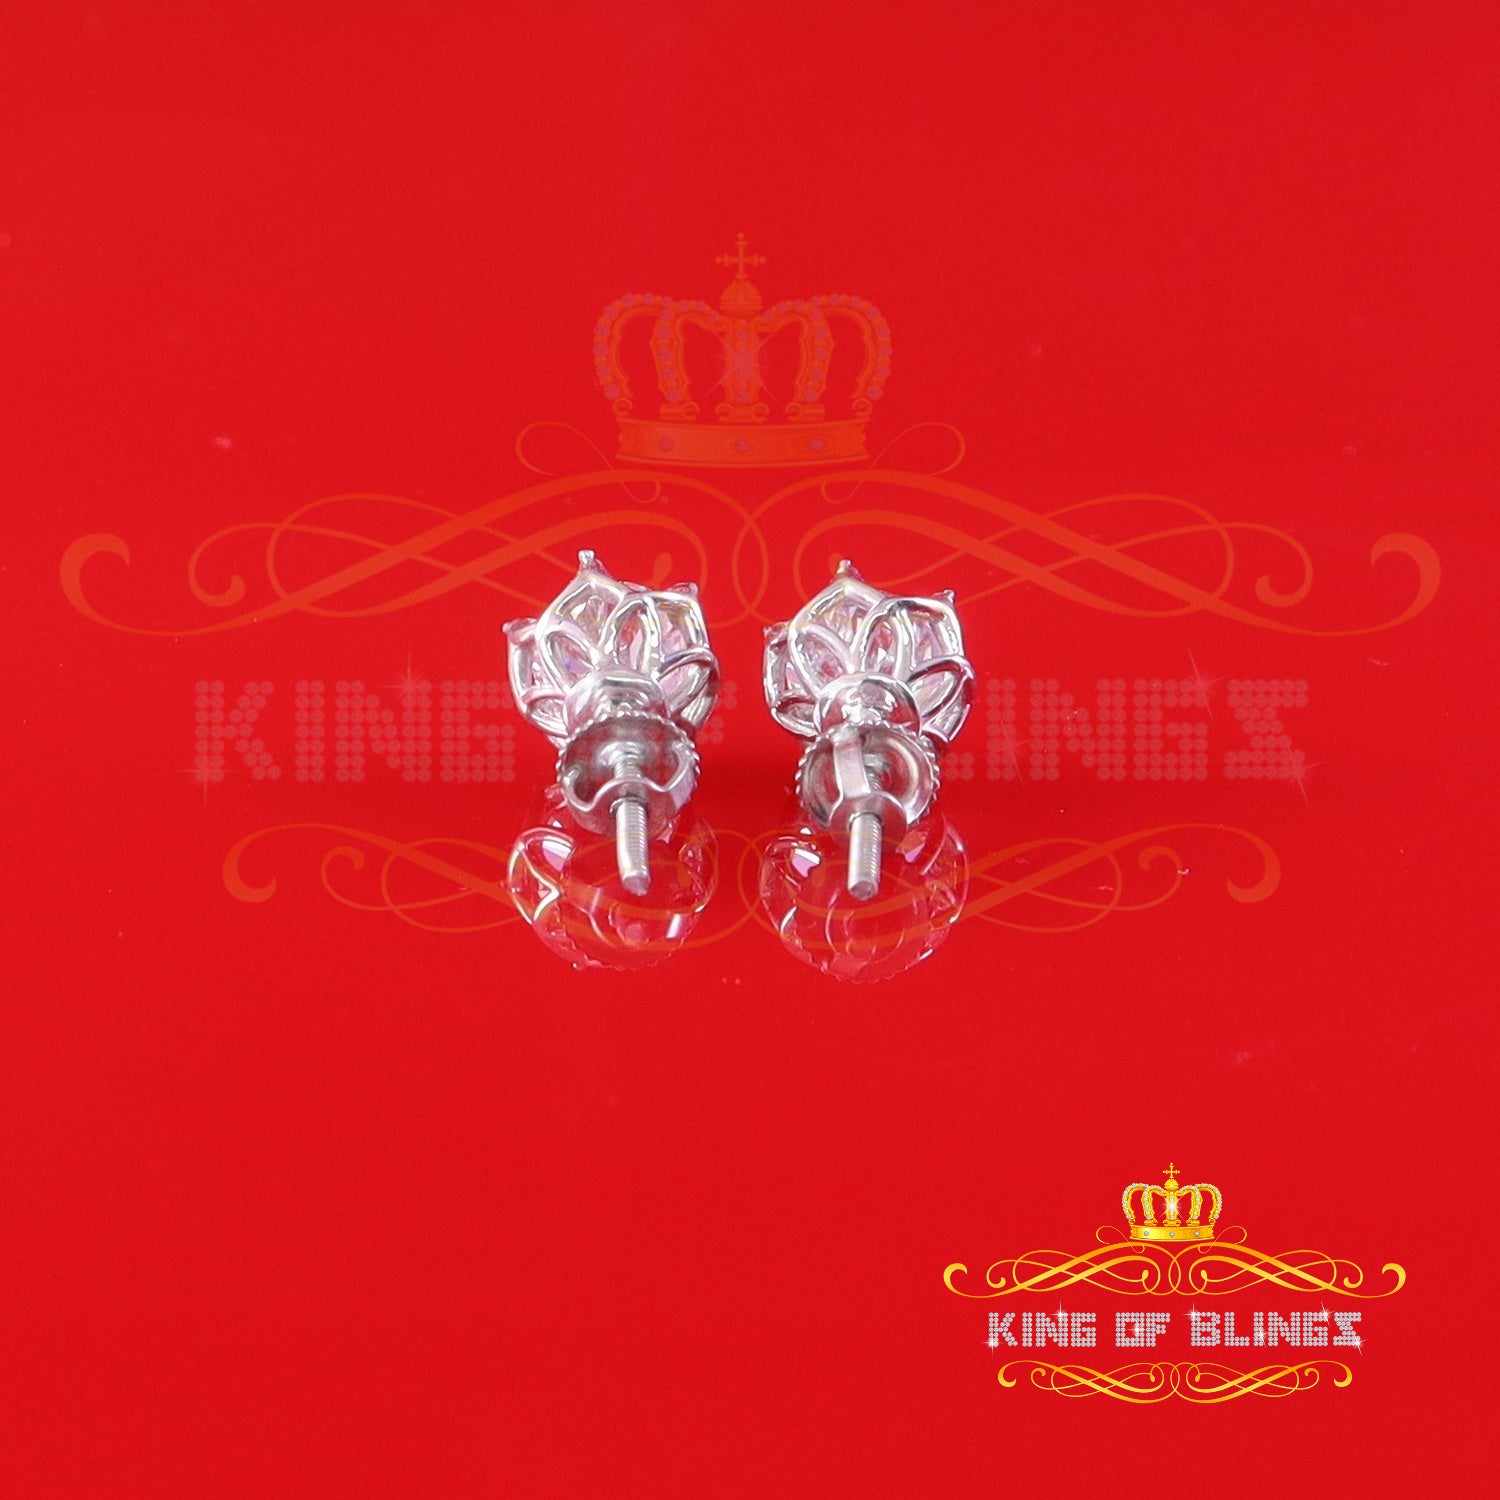 King of Bling's Men's/Womens 925 Silver White 1.50 ct VVS 'D' Moissanite Round Stud Earrings KING OF BLINGS